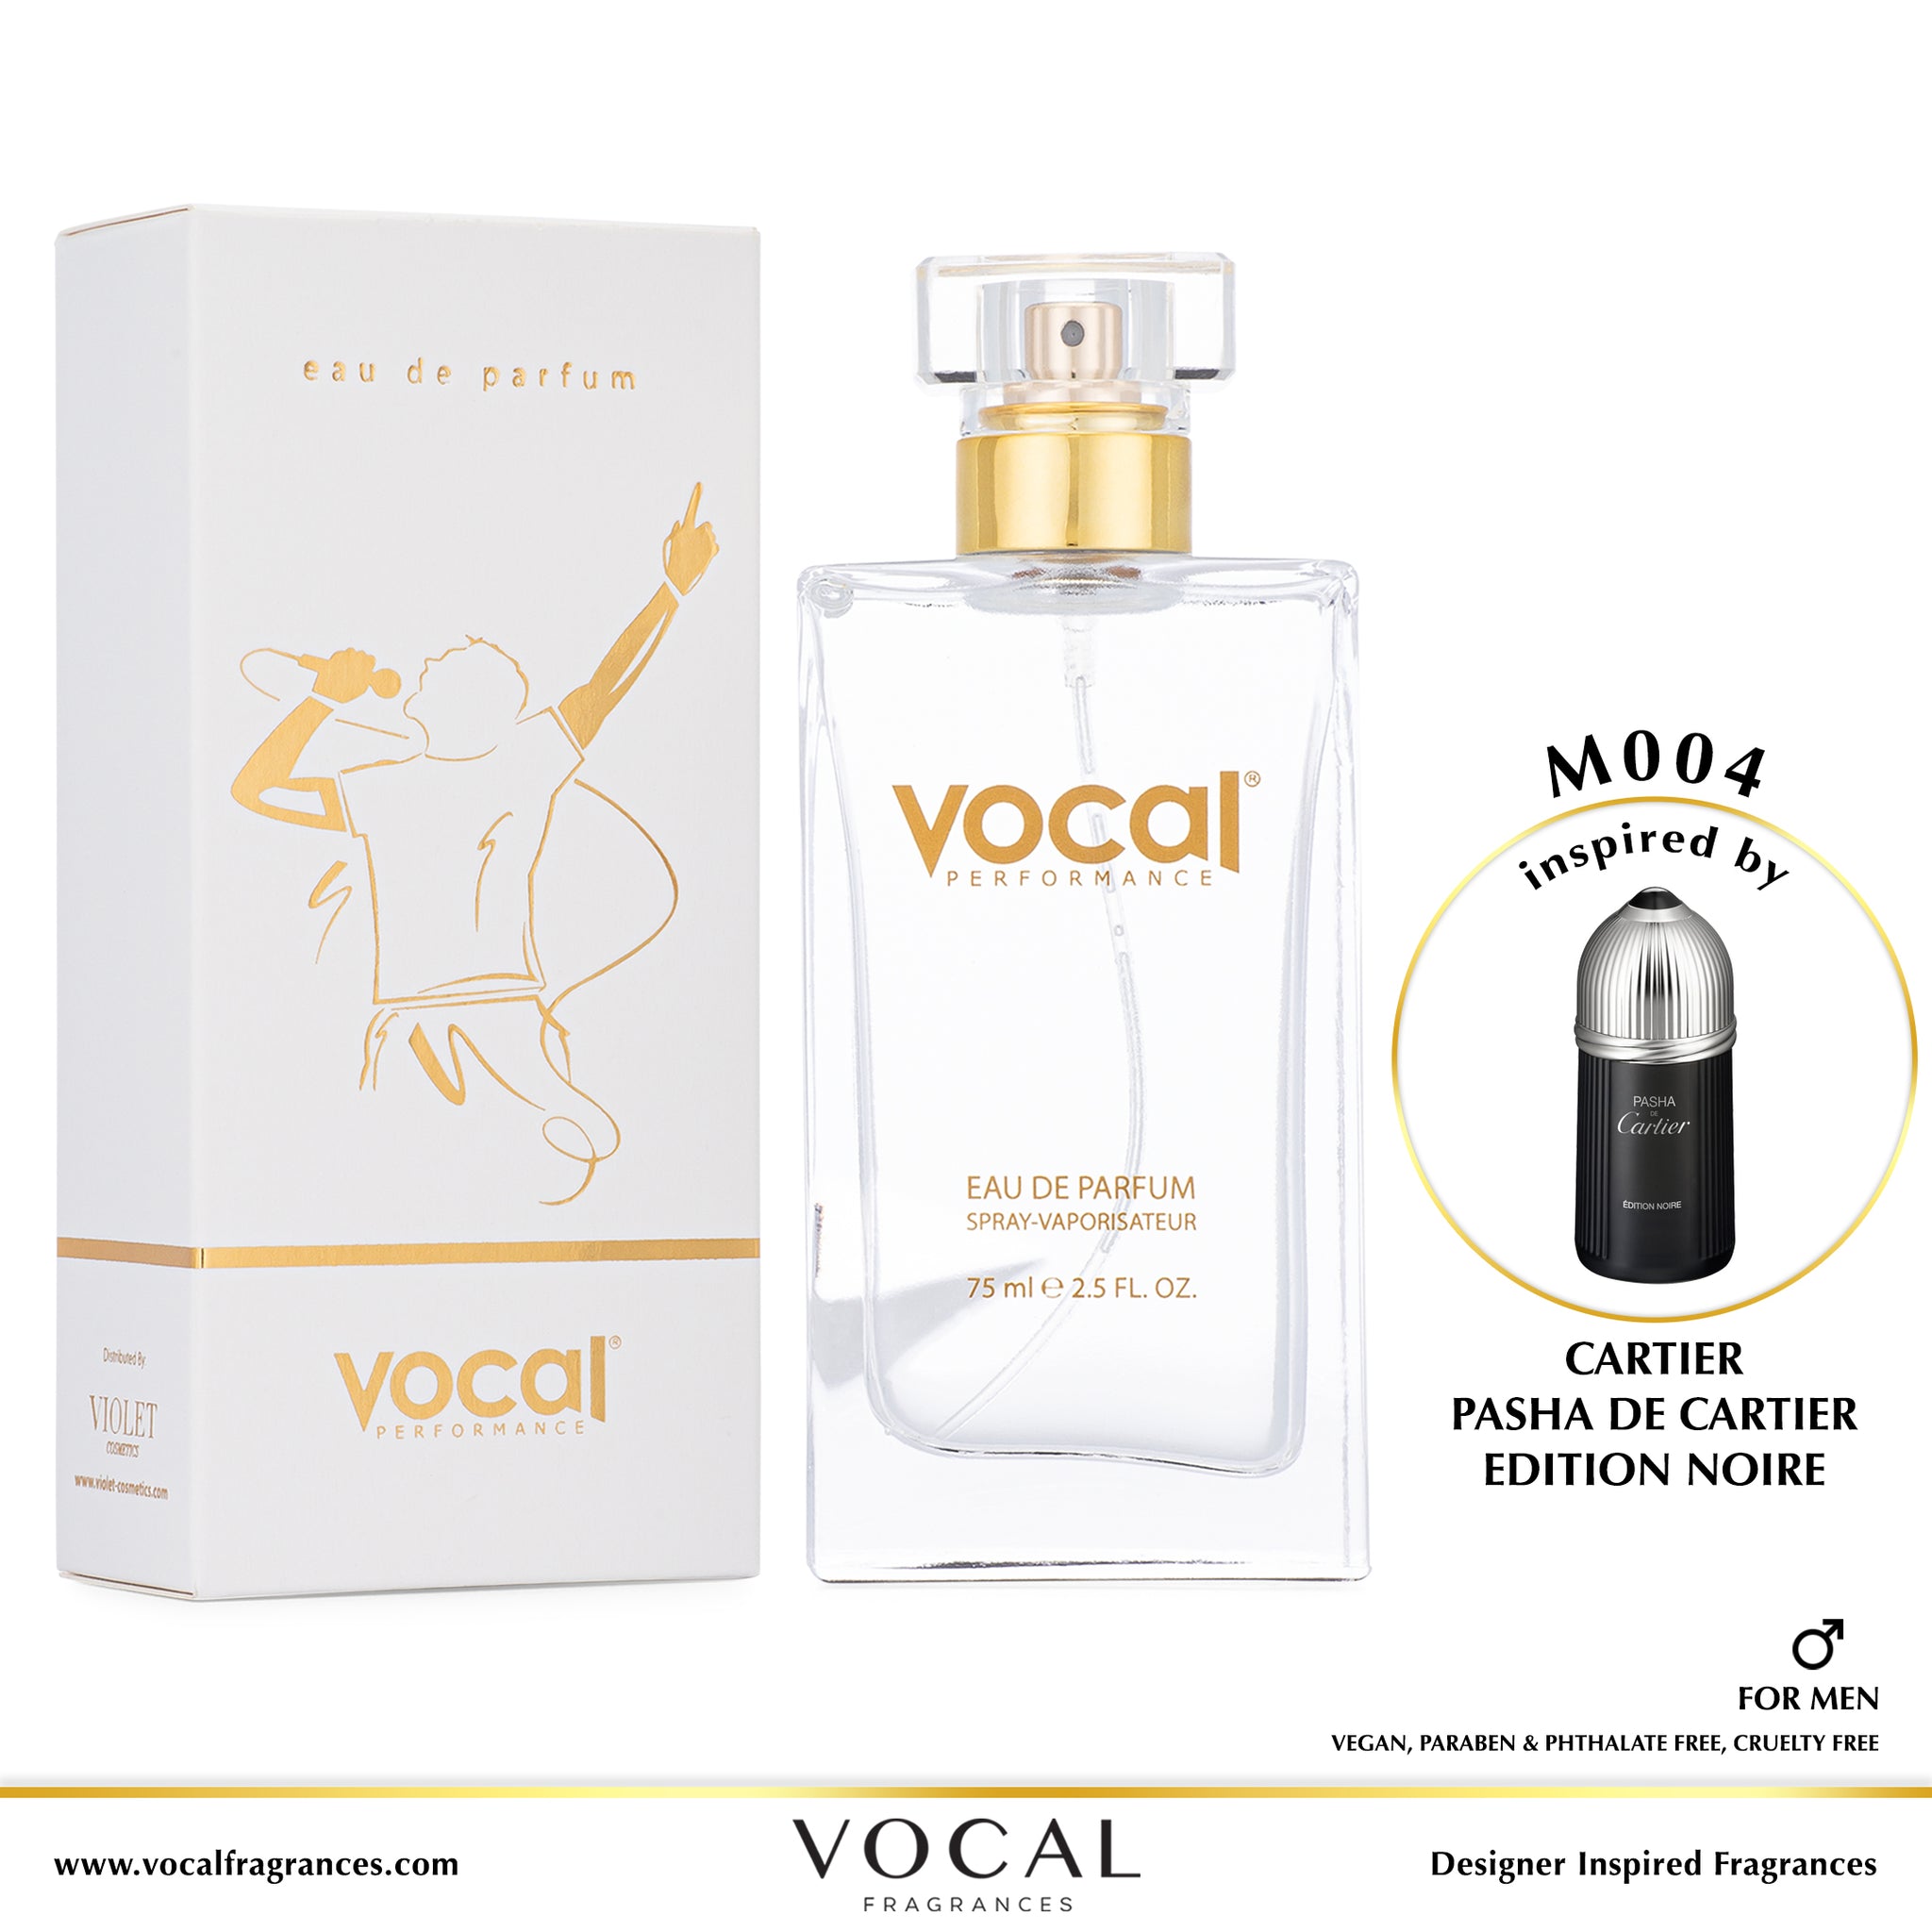  Vocal Performance M005 Eau de Parfum For Men Inspired